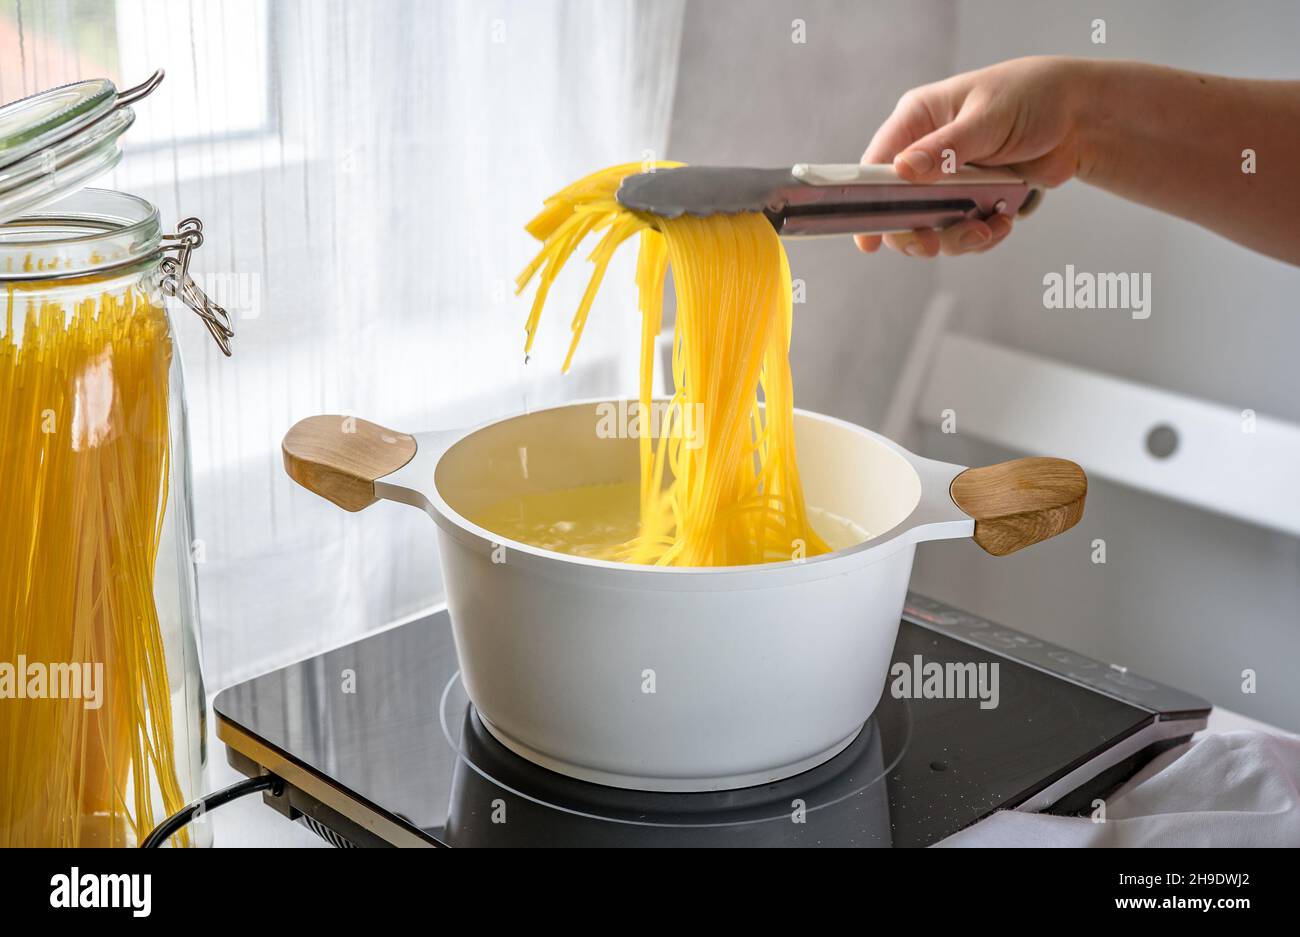 Weibliche Hand nimmt heiße Pasta aus dem Topf Stockfoto